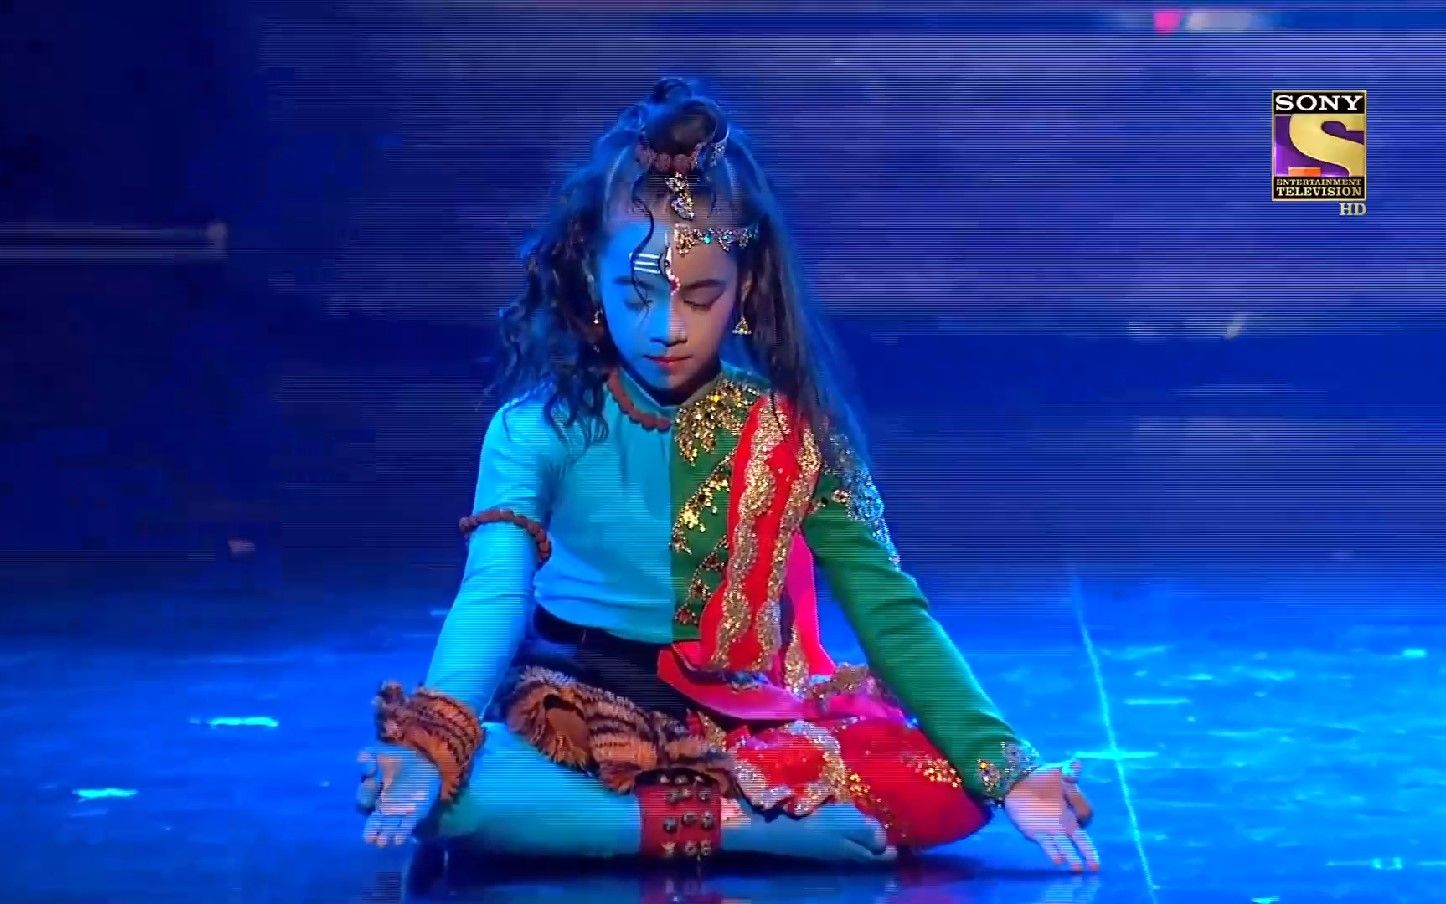 天呢，半面妆湿婆，真的湿婆附身吗。太精彩了，印度节目舞台现场舞蹈表演，震惊众人，最后那个盘腿莲花坐，美到极致。